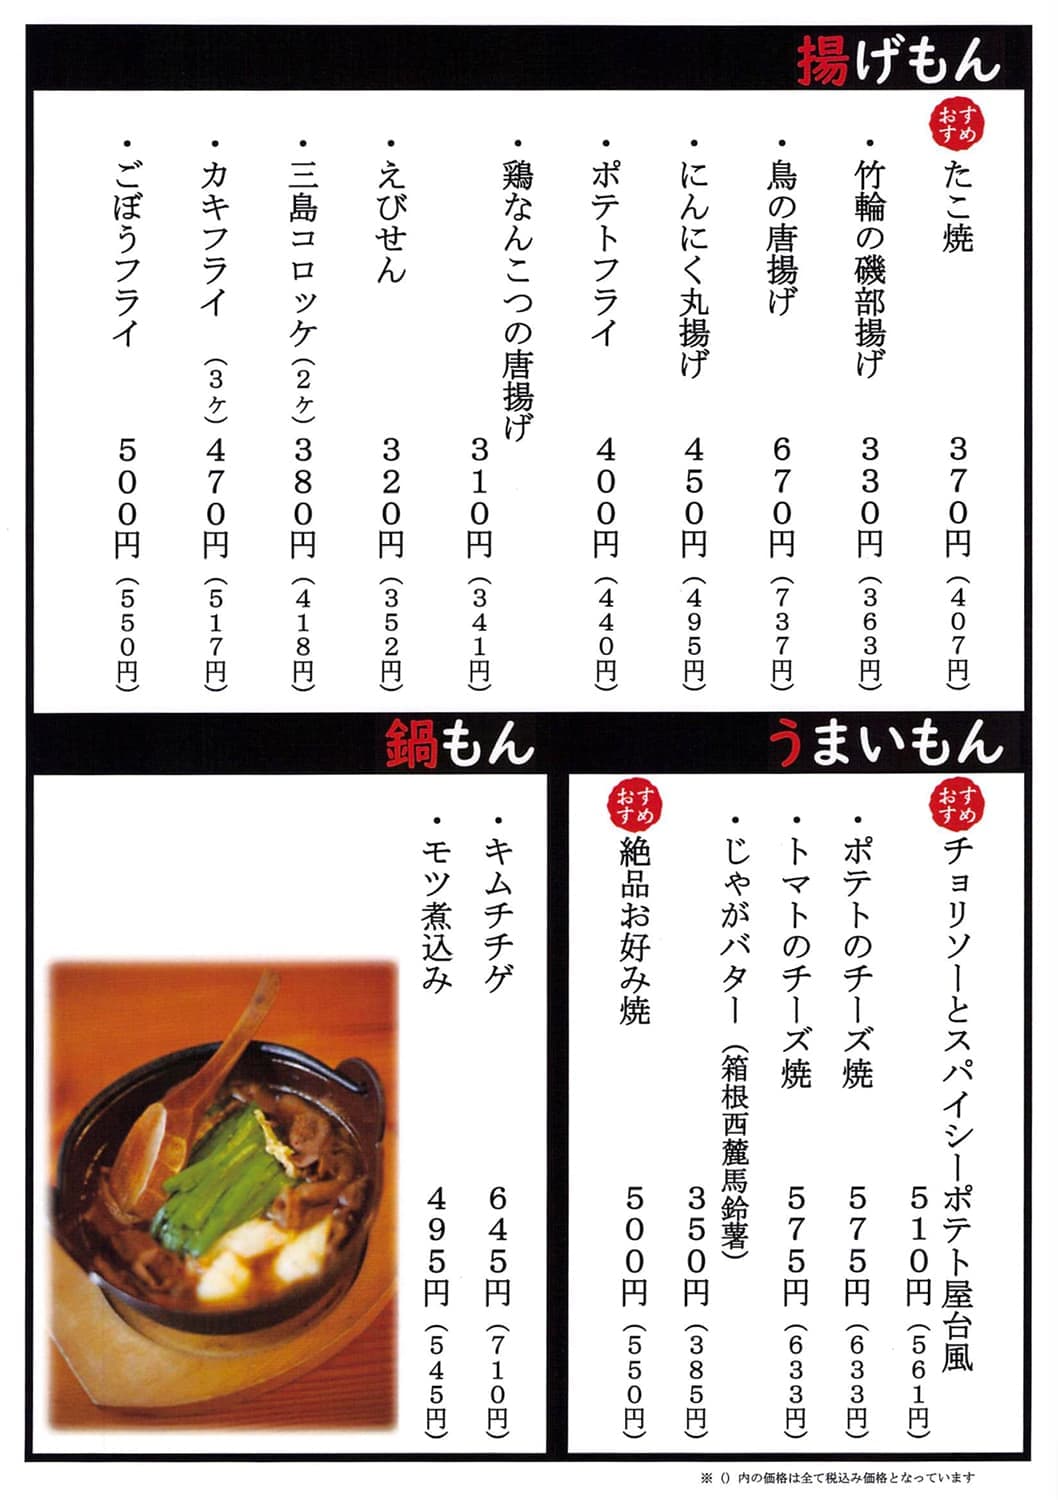 てっちゃんのMENU｜焼とりてっちゃん｜中華食堂 てっちゃんは、静岡県三島市の三島駅前と裾野市にあるテイクアウトもできる居酒屋｜焼きとり、串焼き屋、中華料理屋です。